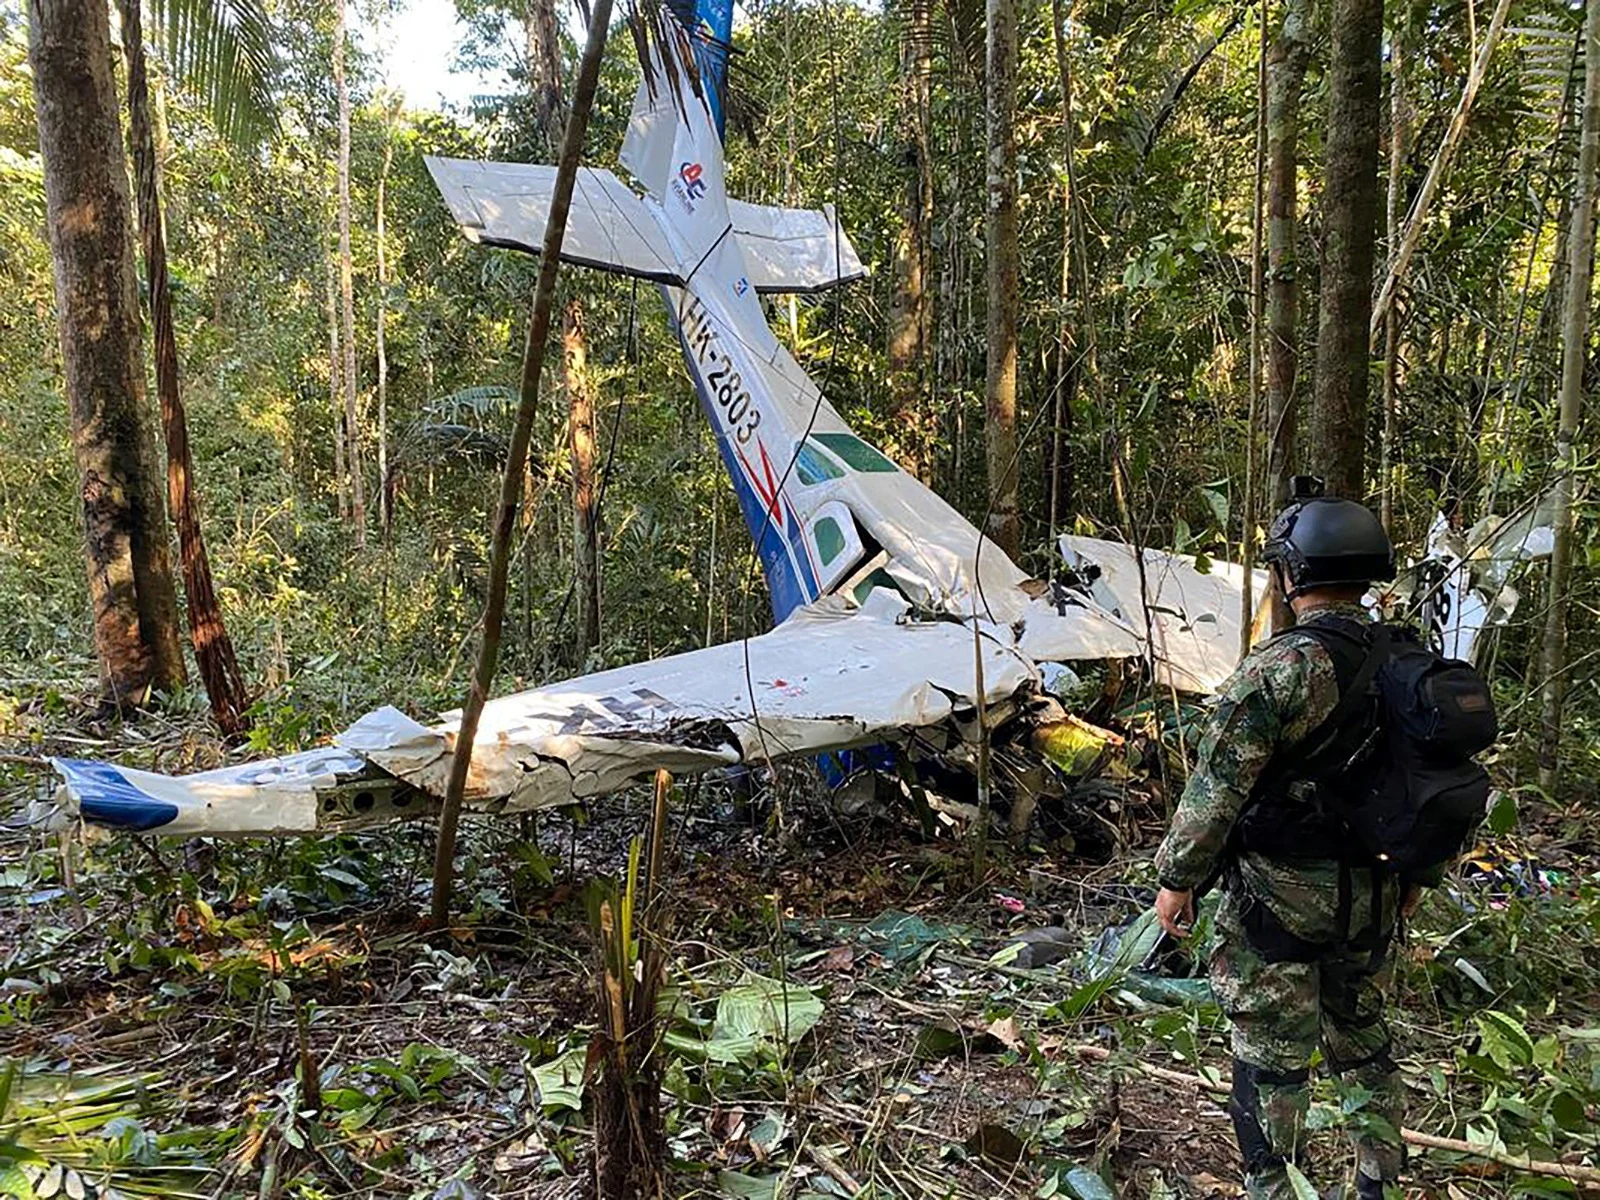 המטוס שהתרסק בג'ונגל האמזונס בקולומביה